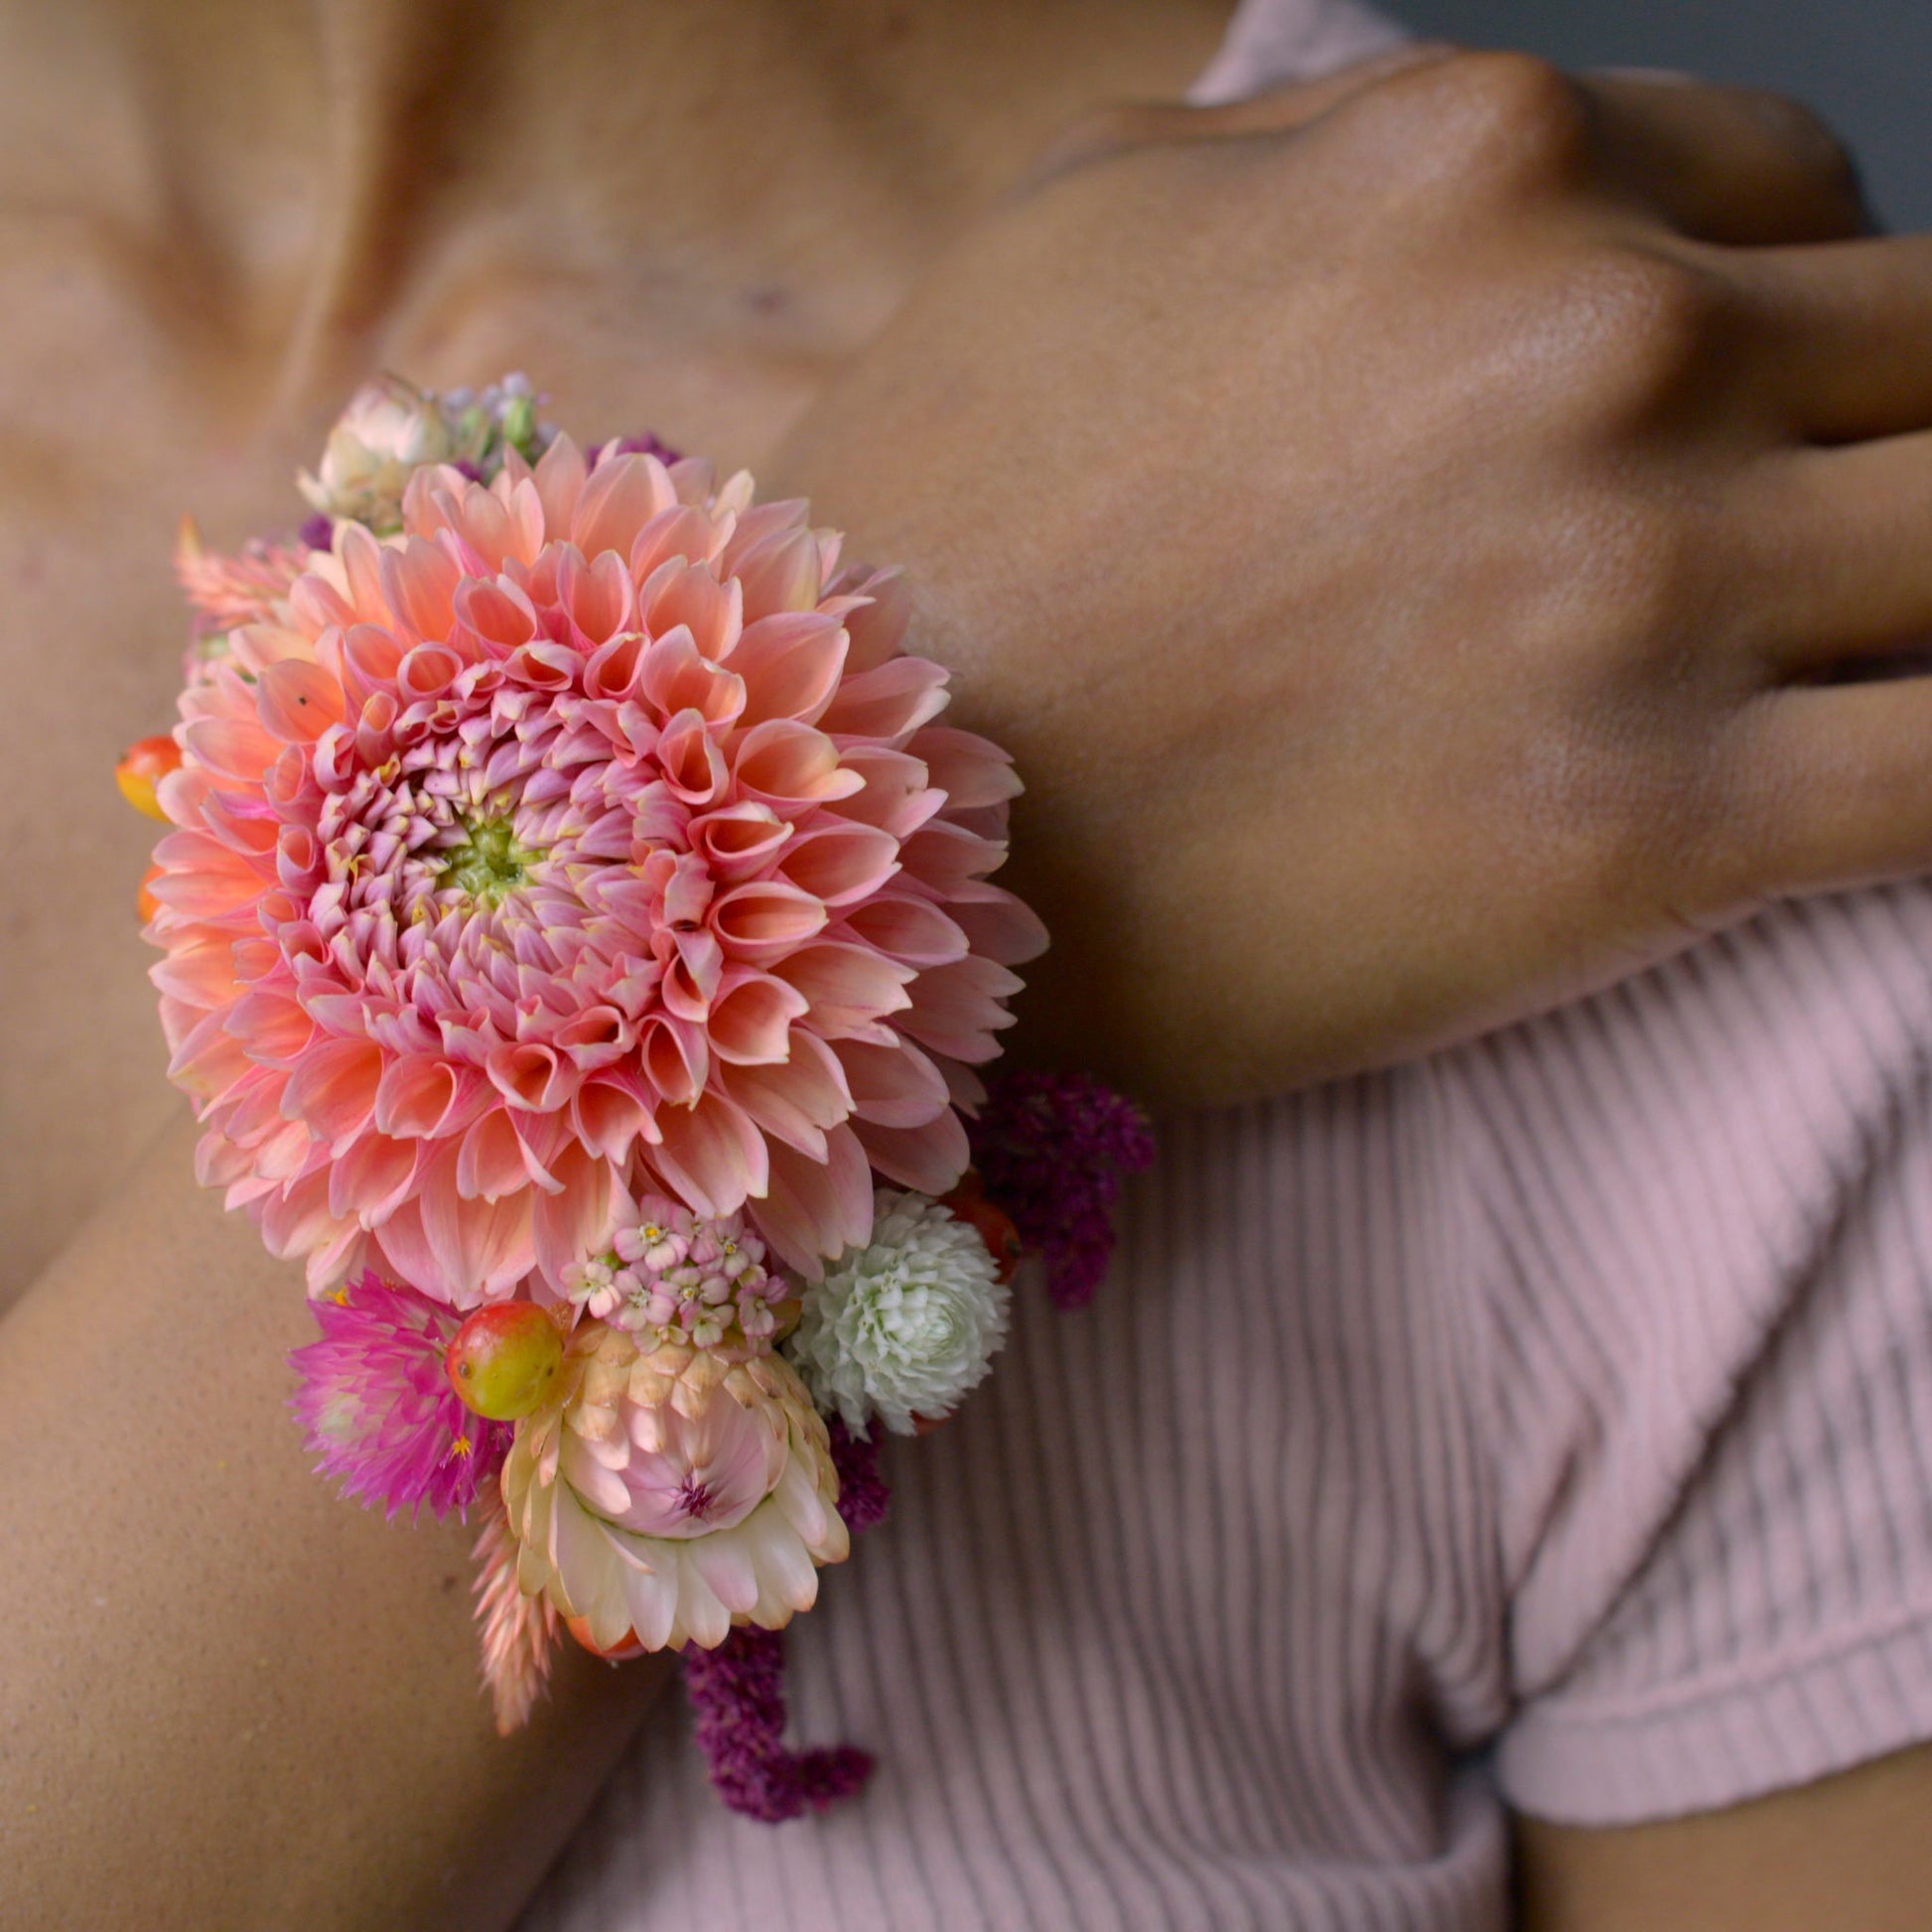 Floral-Wrist-Cuff-3